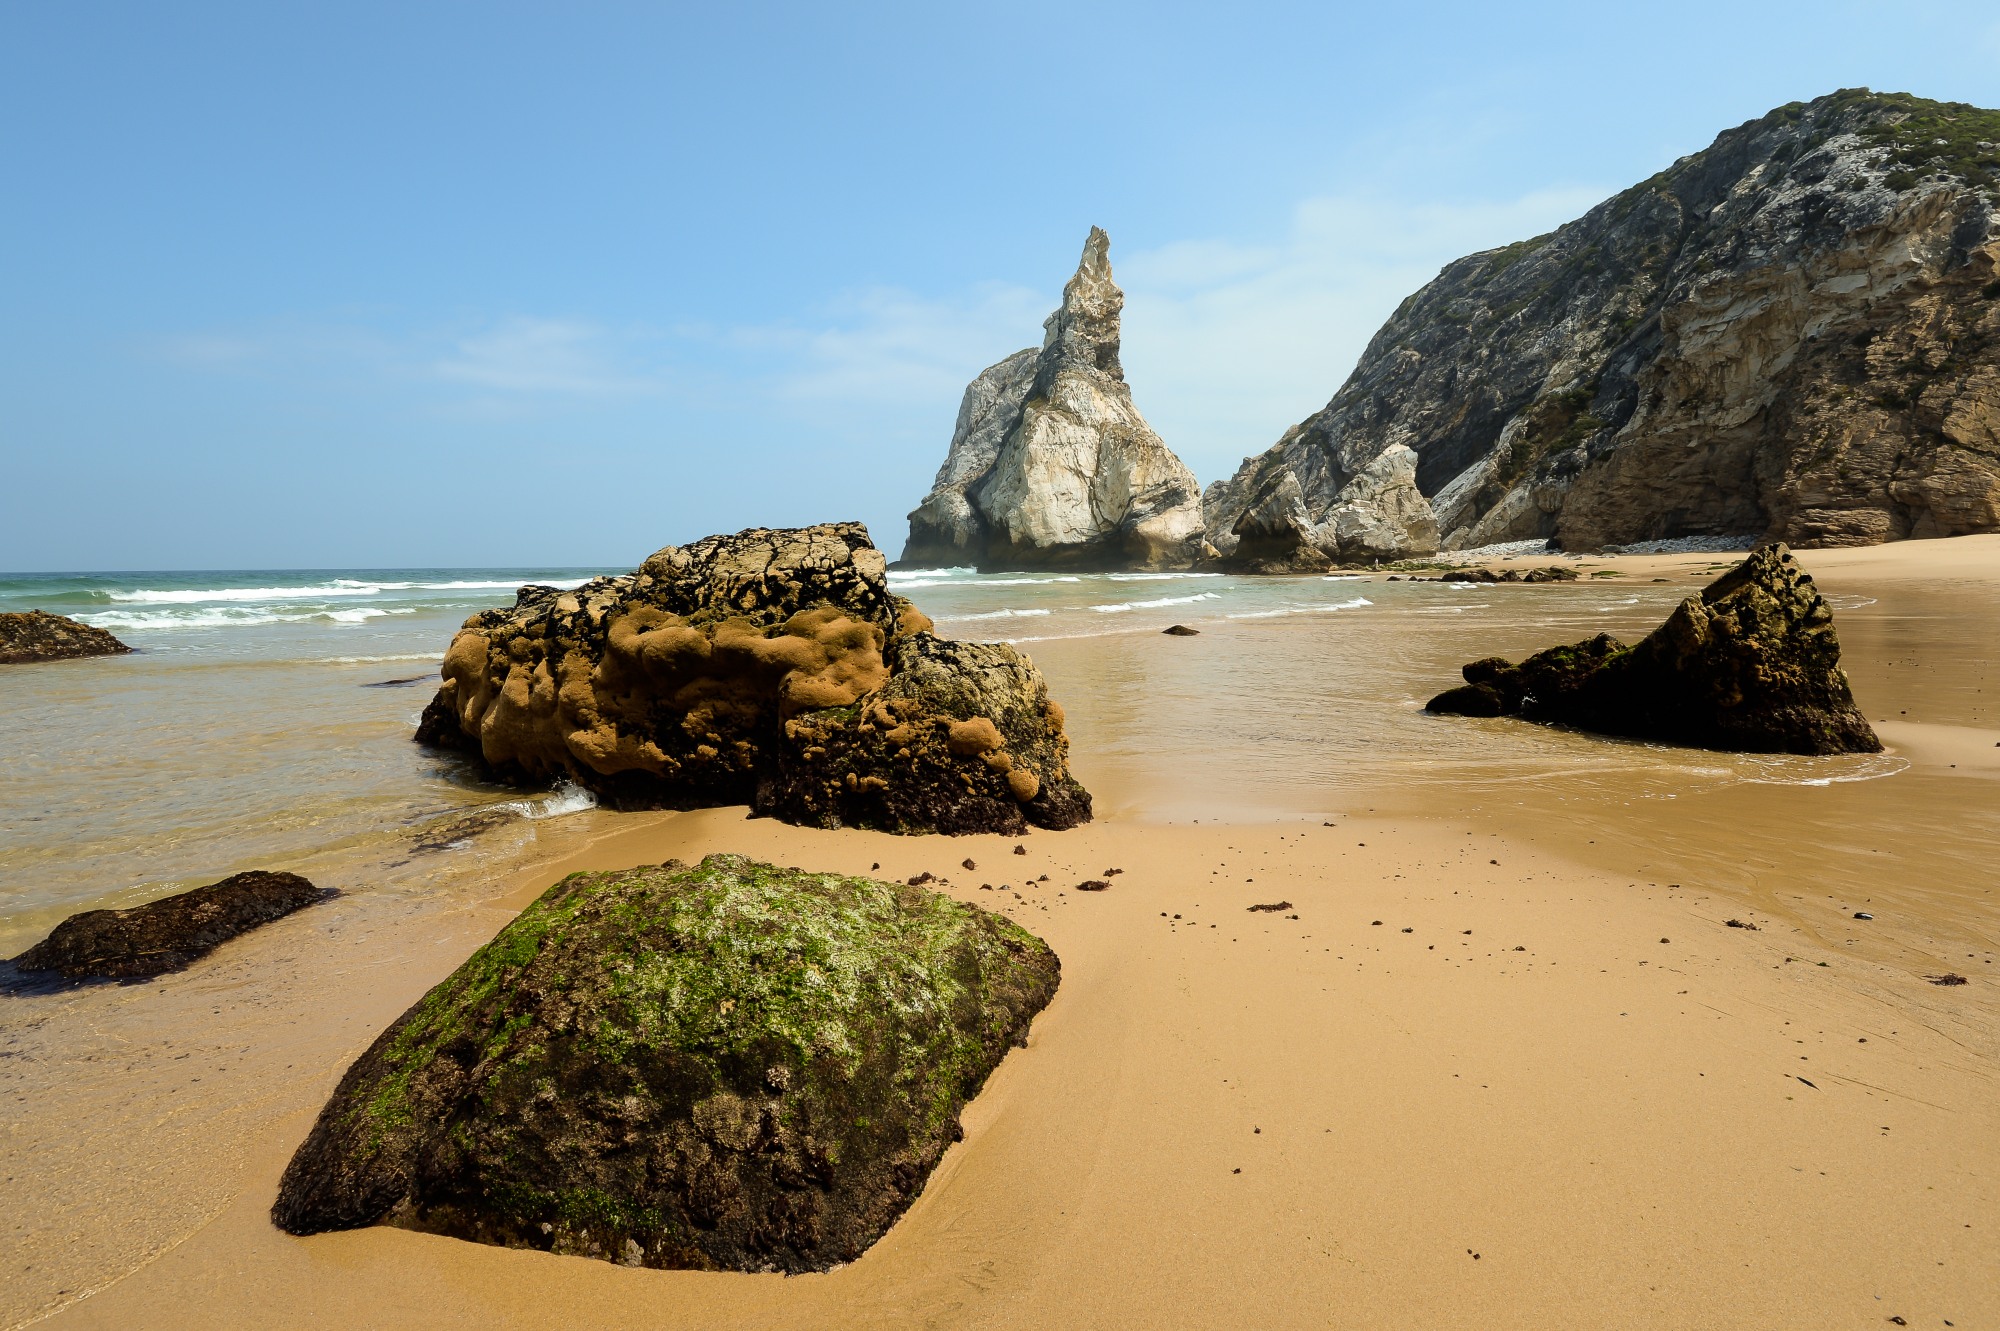  Praia da Ursa, vicino a Cabo da Roca, Portogallo ...